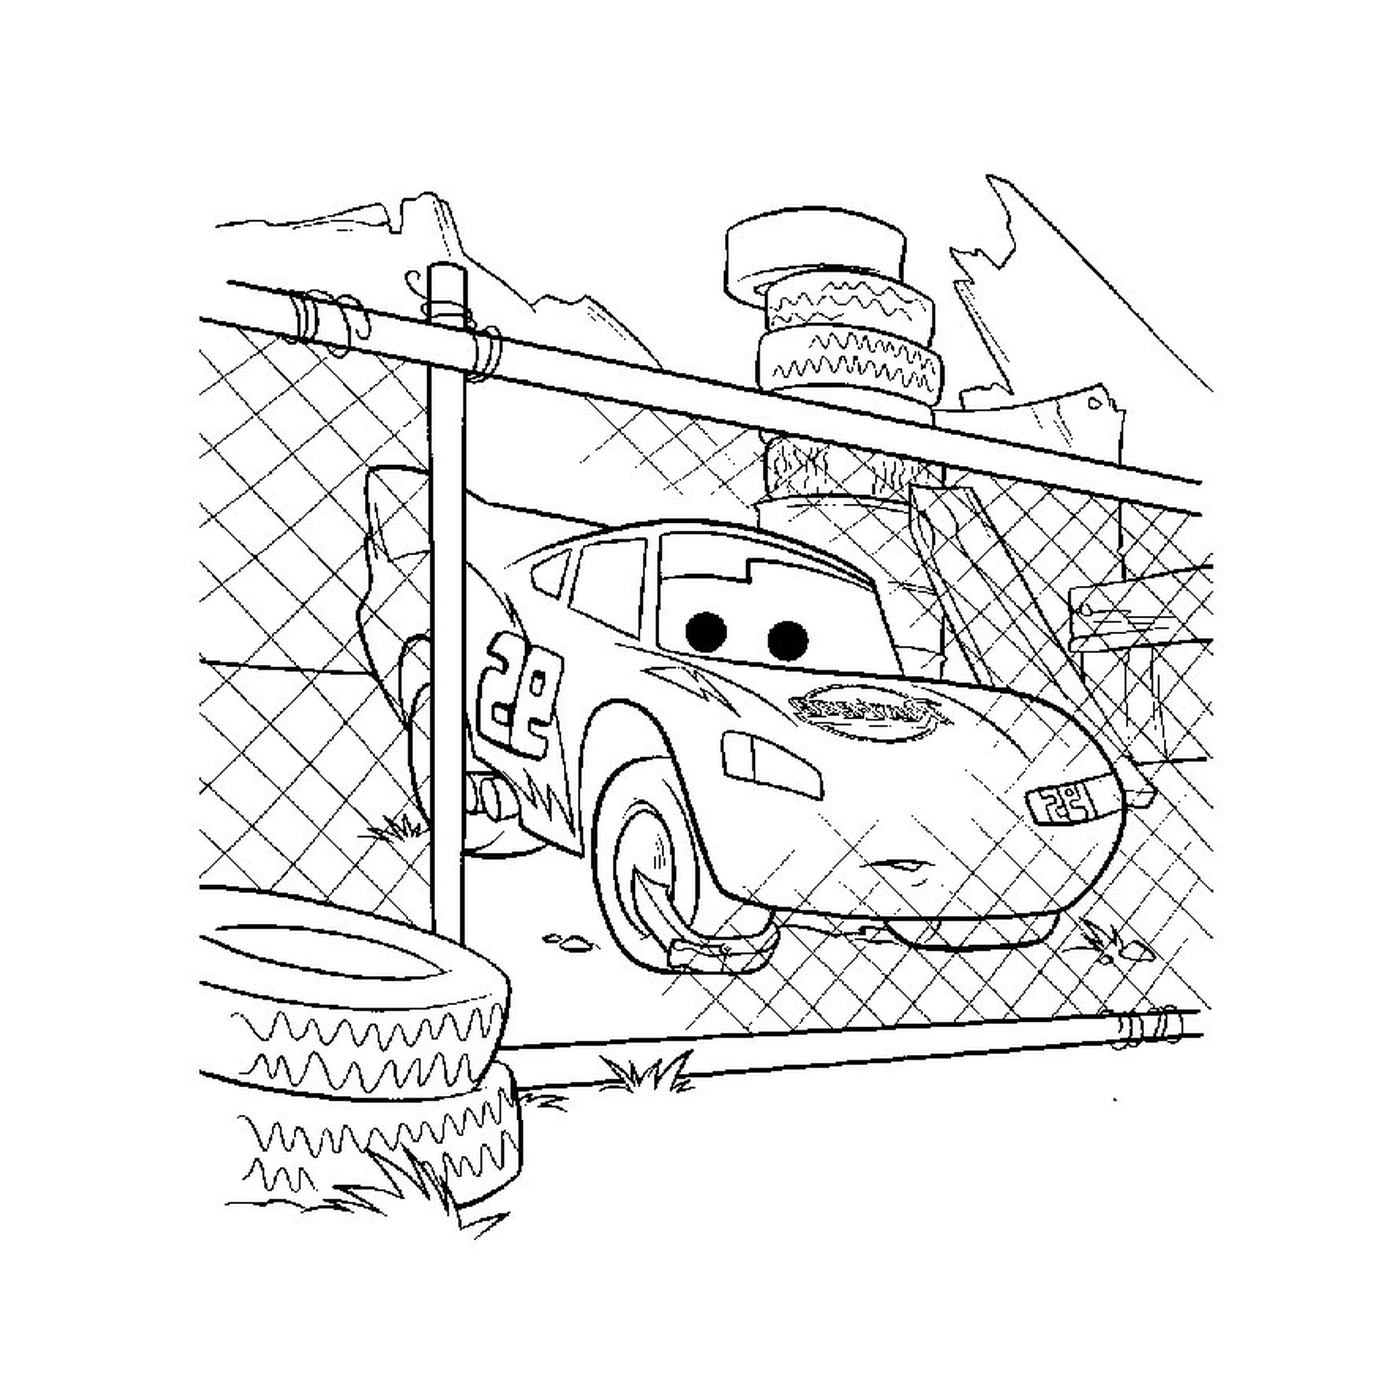  围栏区域内的一辆汽车 